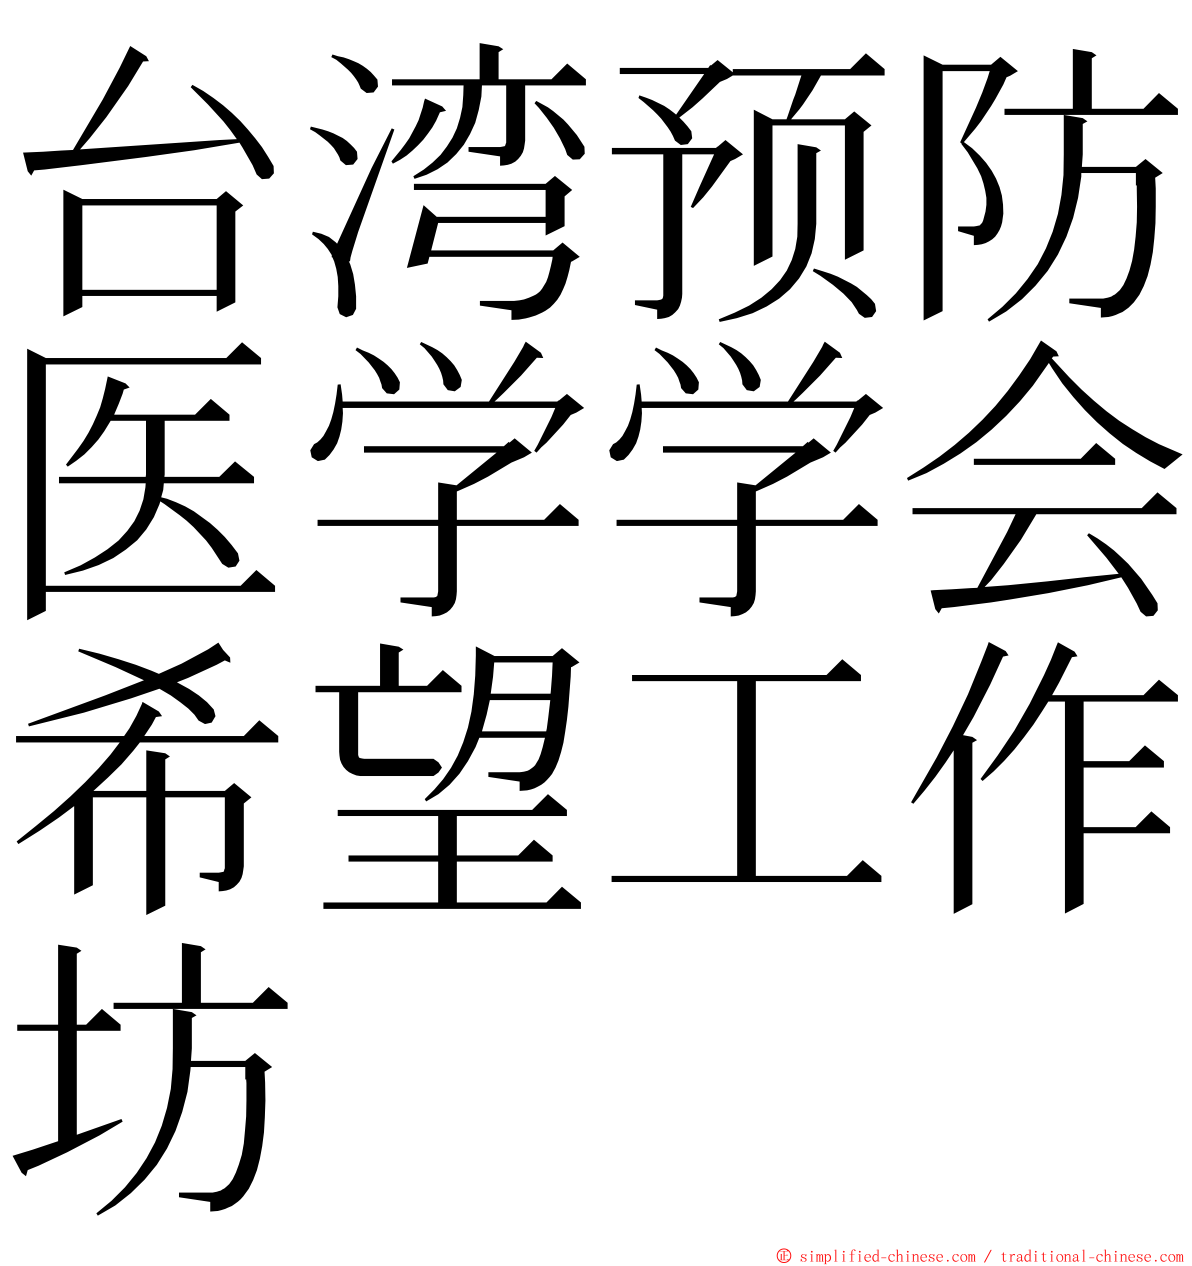 台湾预防医学学会希望工作坊 ming font